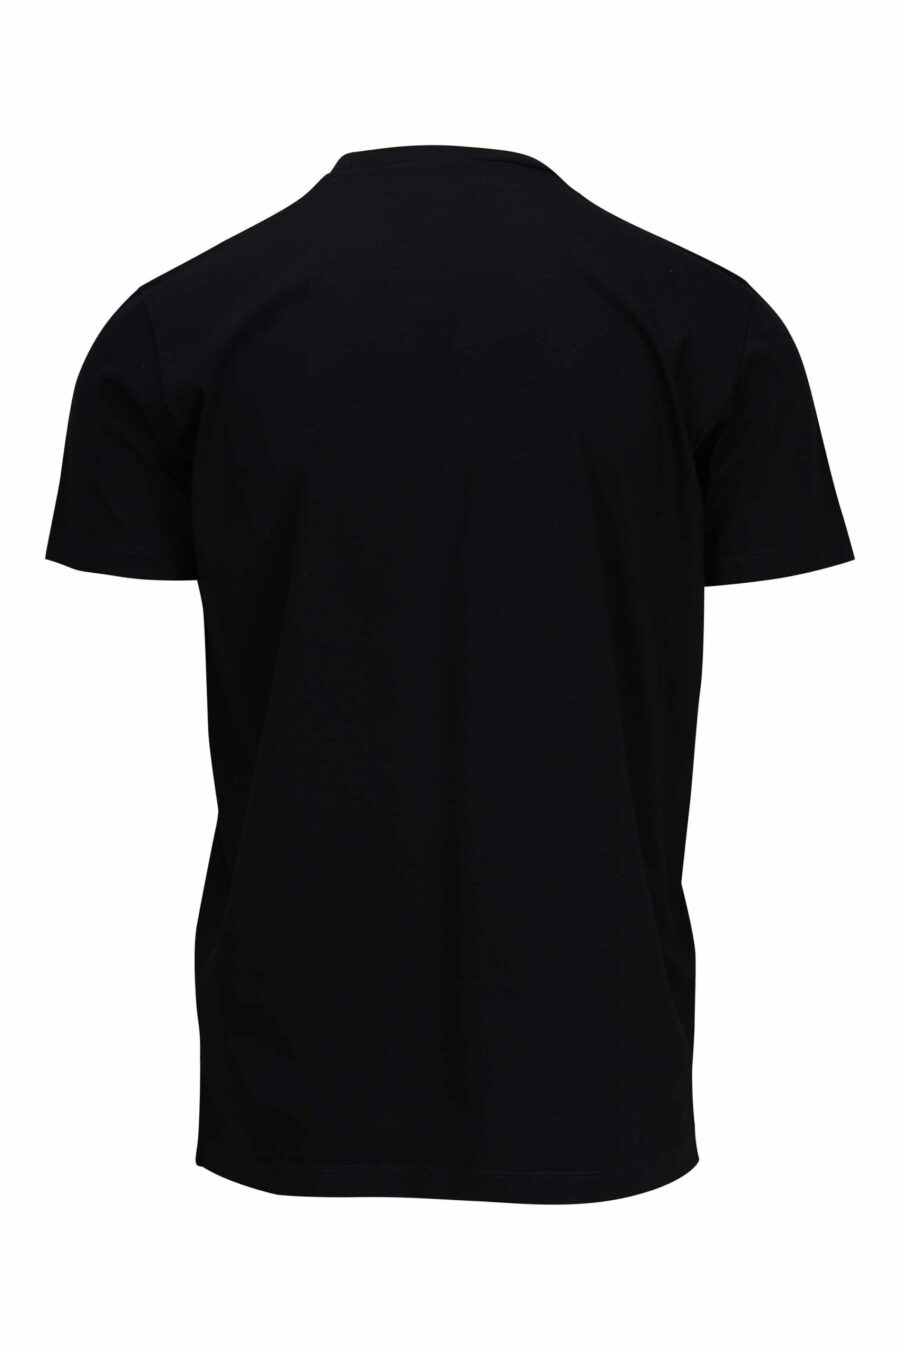 Schwarzes T-Shirt mit rundem einfarbigem Maxilogo - 8054148086091 1 skaliert